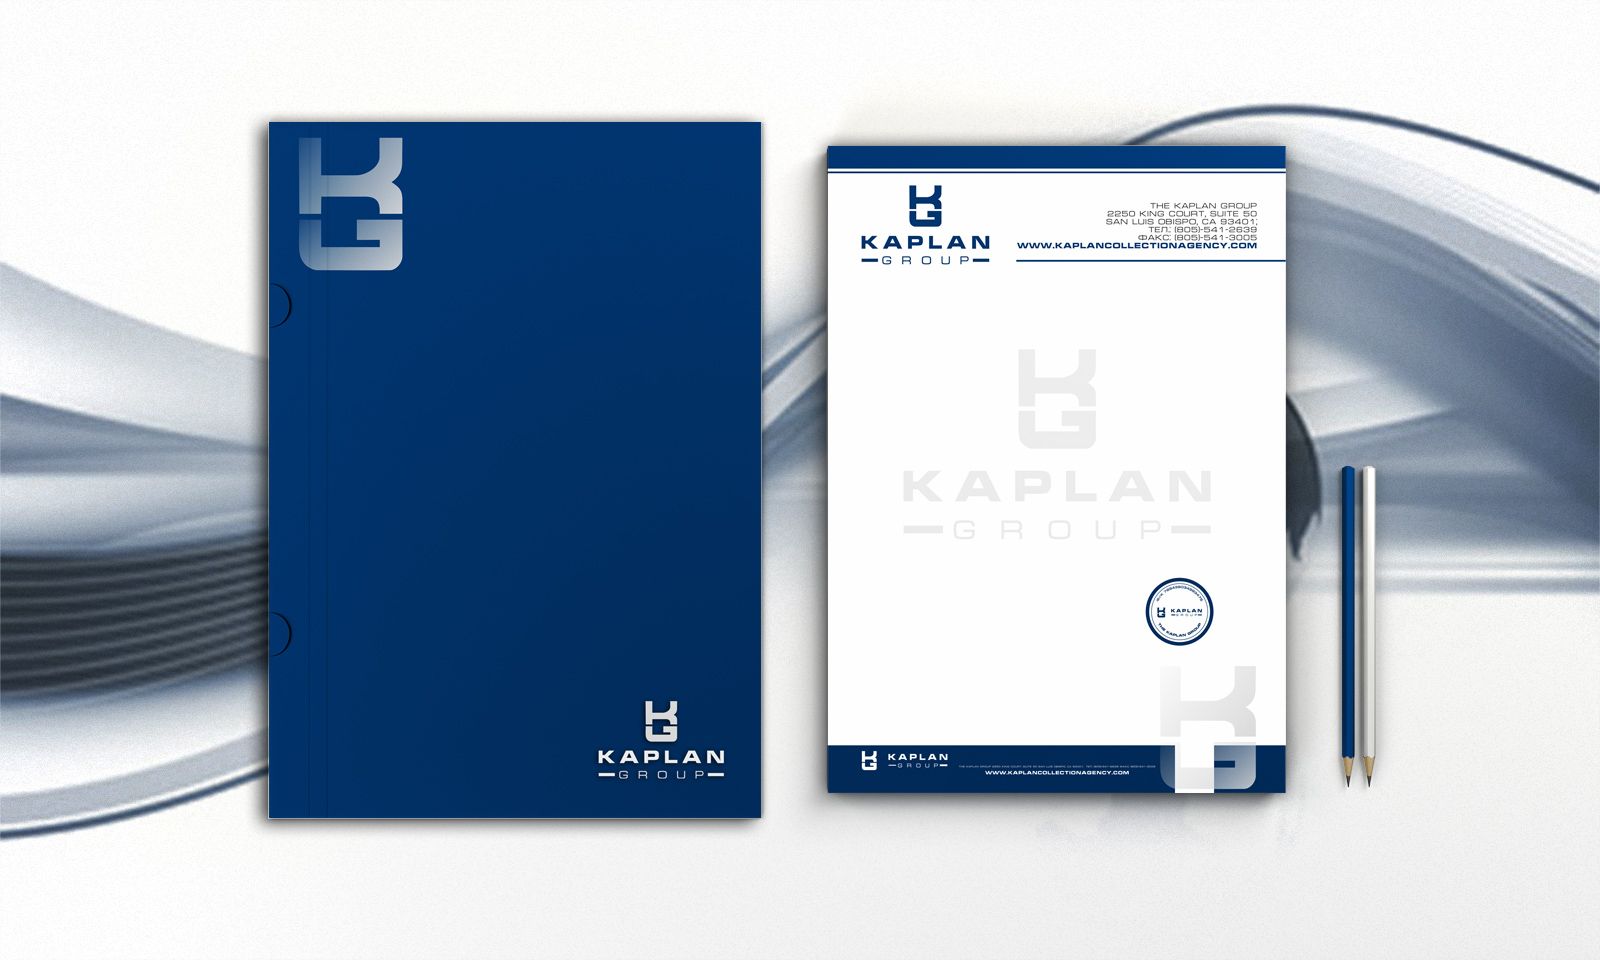 Транспортно-логистический холдинг KAPLAN Group - дизайнер pavelmakar